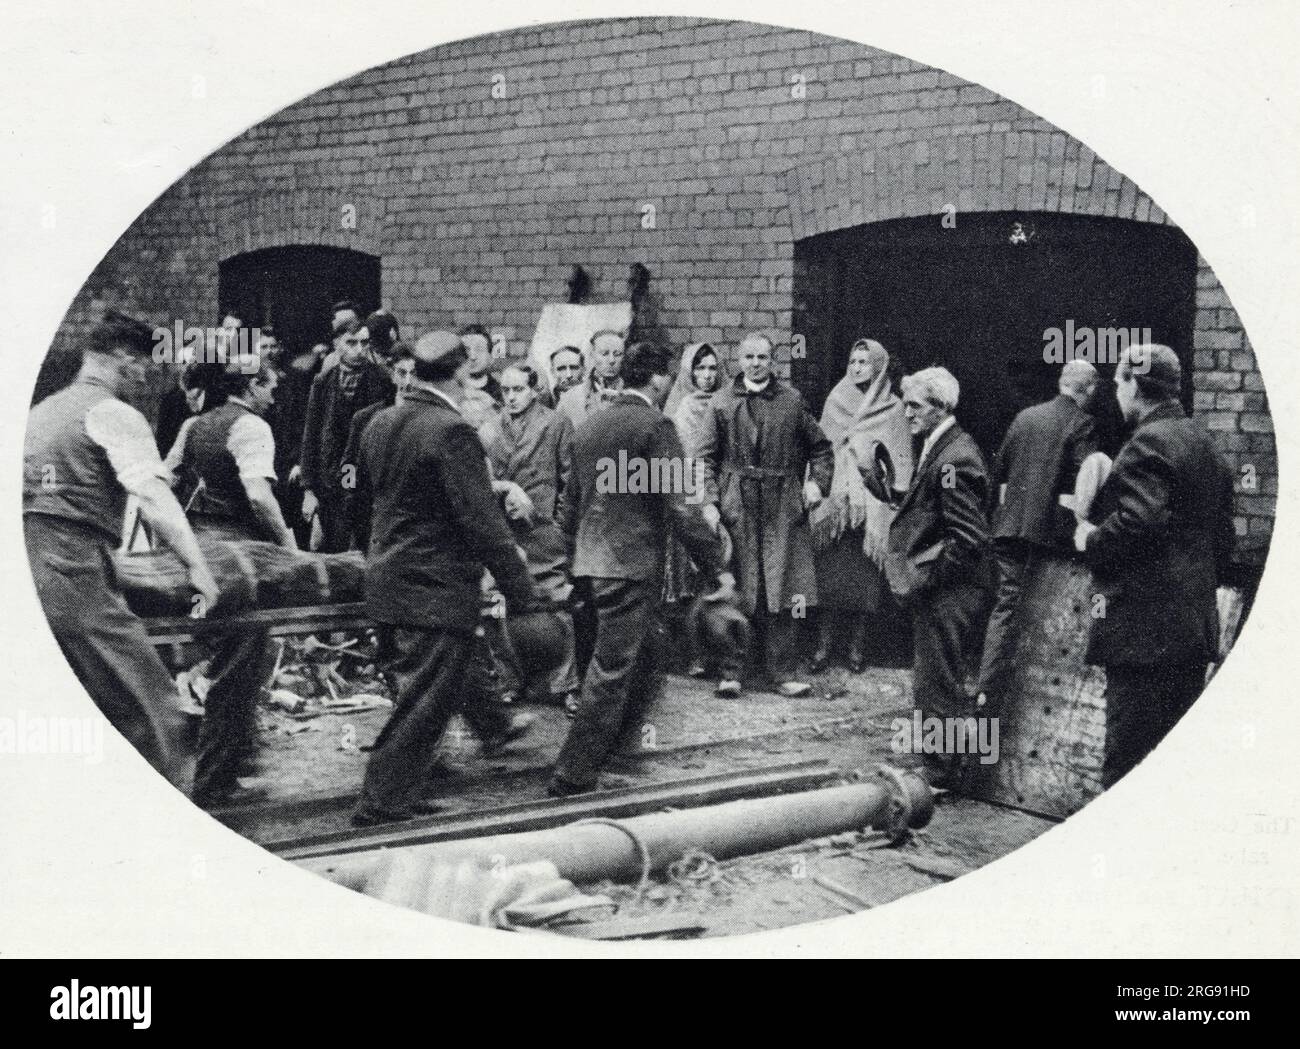 Bickershaw Colliery in Lancashire, wo sich am 10. Oktober 1932 eine Kohlebergwerkskatastrophe ereignete. Ein Aufzug mit 20 Leuten fiel auf die Mine und tötete alle bis auf eine Person. Das Foto zeigt den Rettungstrupp, der einen der Verstorbenen herbringt. Stockfoto